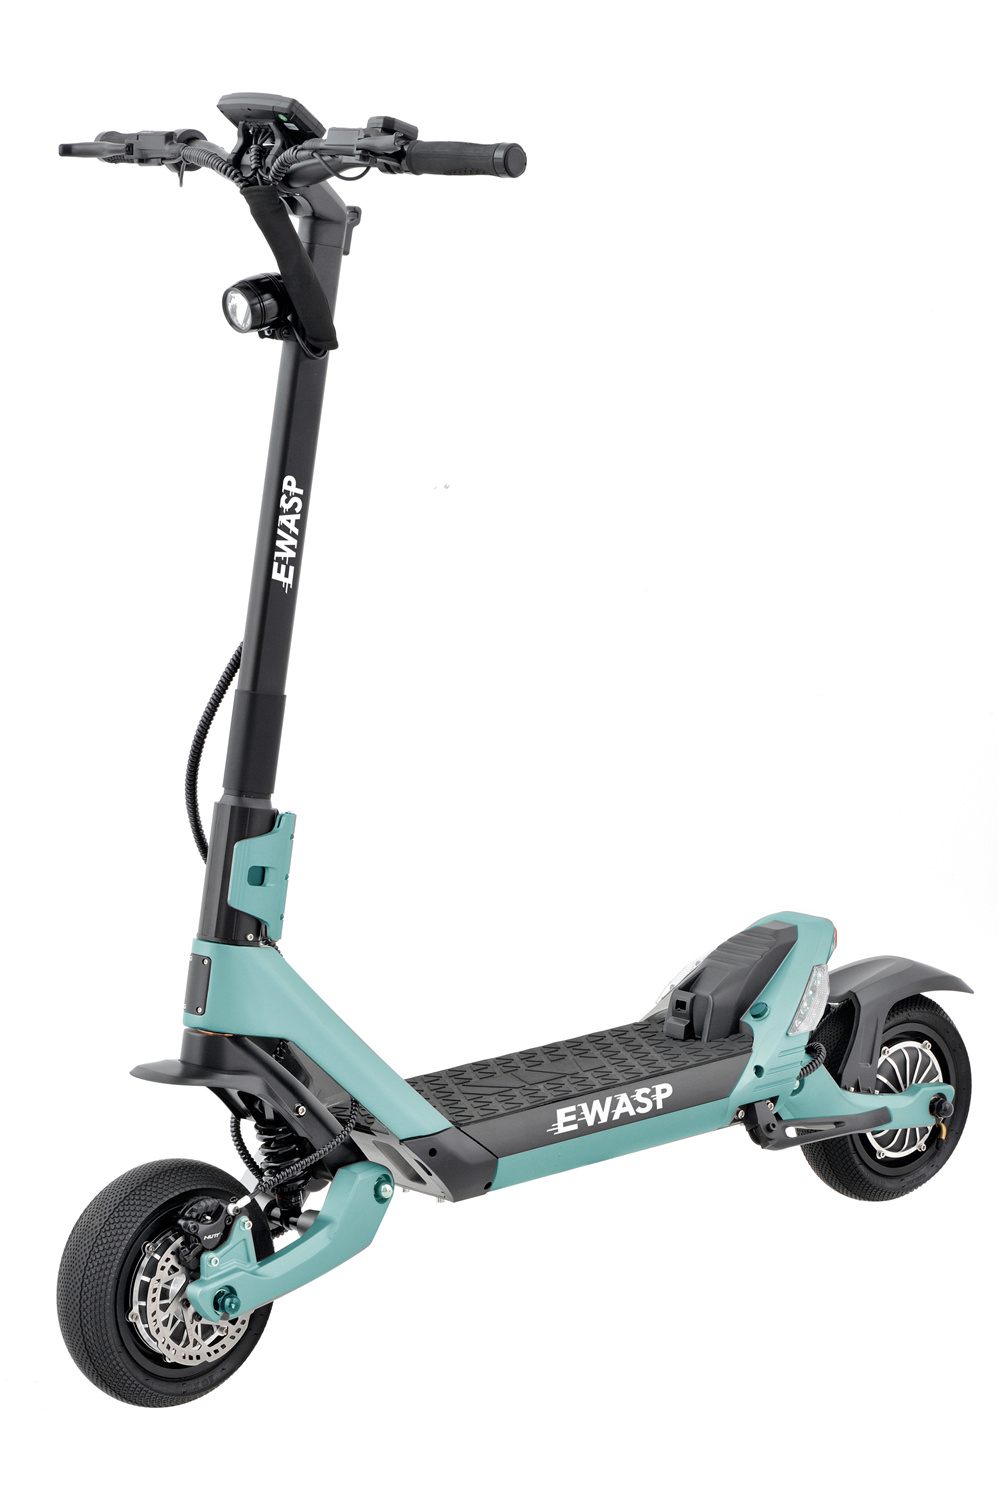 Scooter eléctrico offroad de alta calidad de 2 ruedas